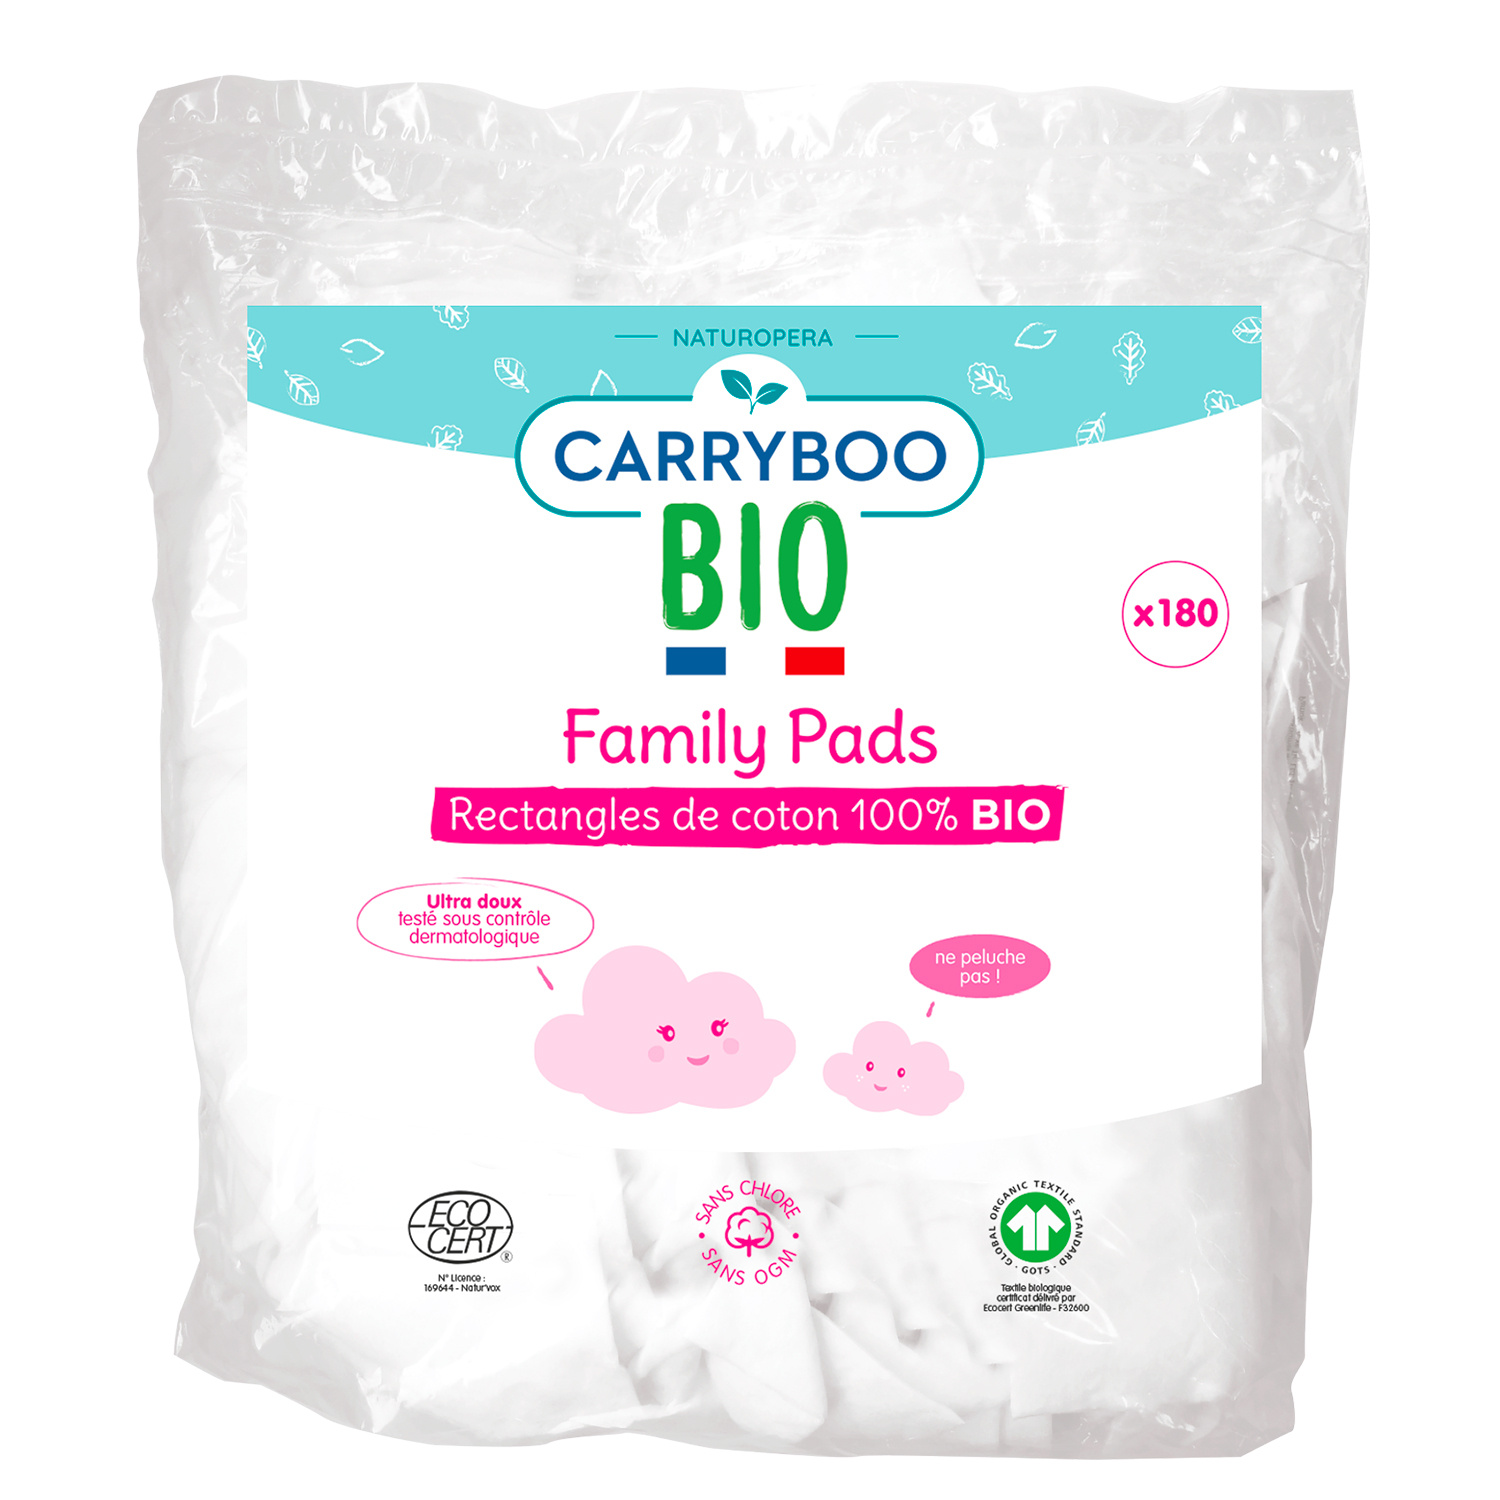 CARRYBOO BIO Family pads rectangles de coton 100% bio ultra doux 180 cotons  pas cher 